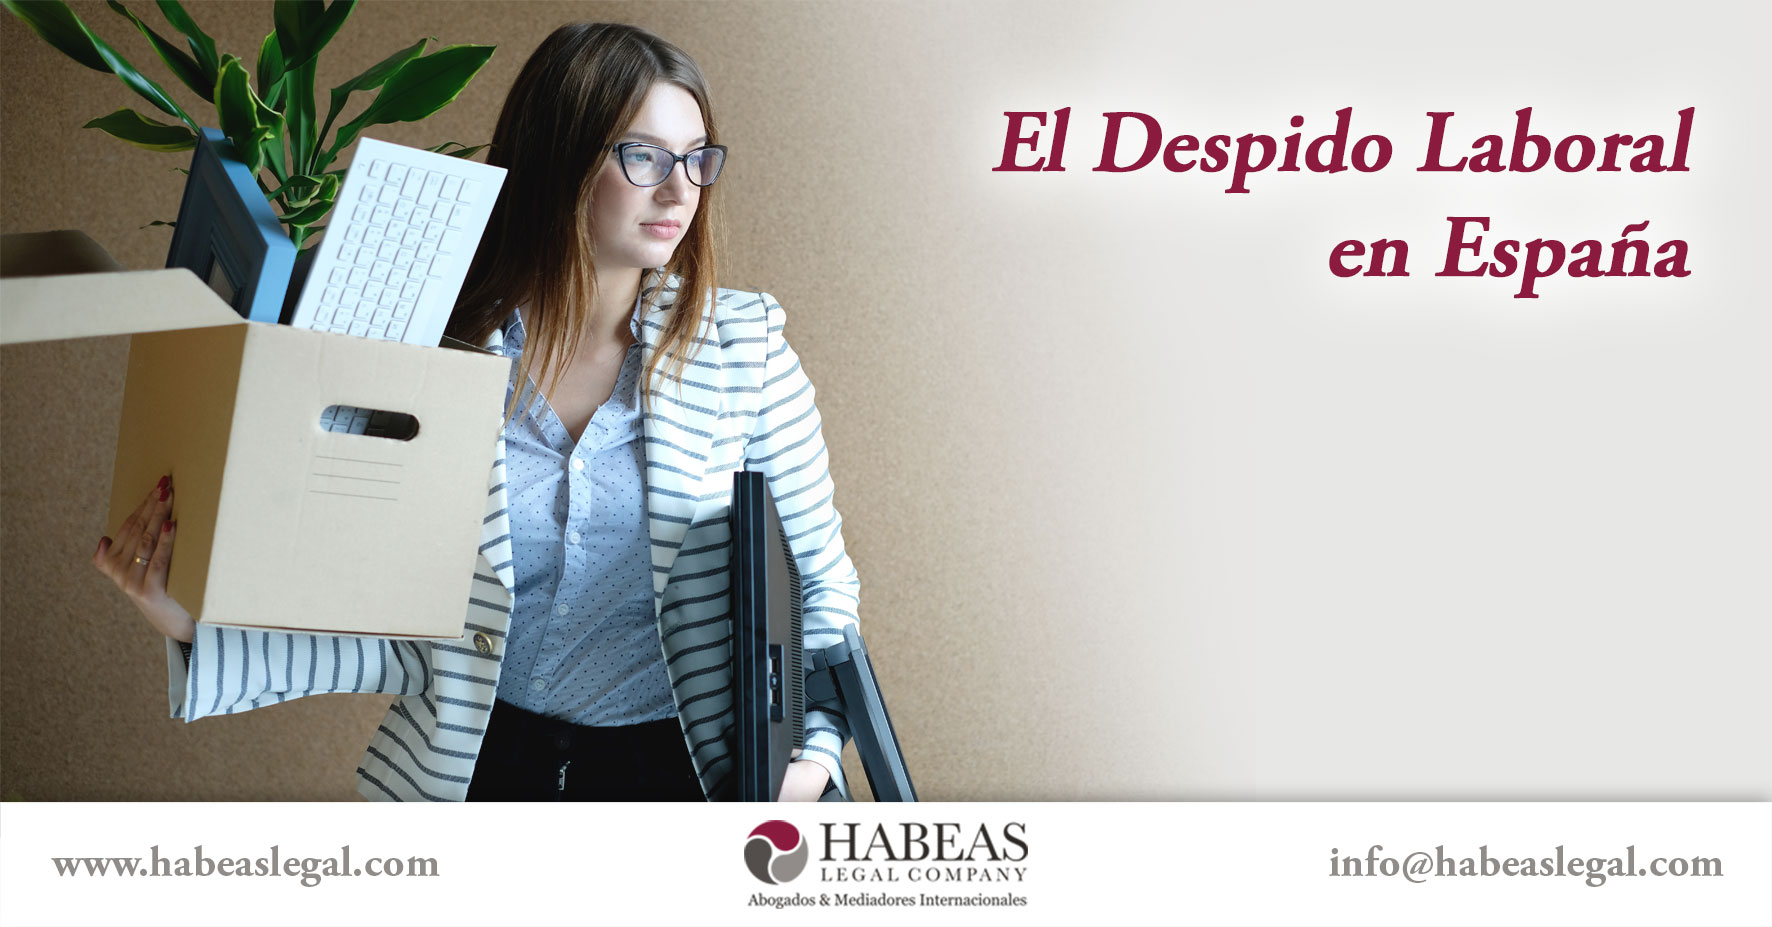 El Despido Laboral Espana Habeas Legal - Abogados Internacionales especializados en Extranjería, Inmigración y Laboral 3